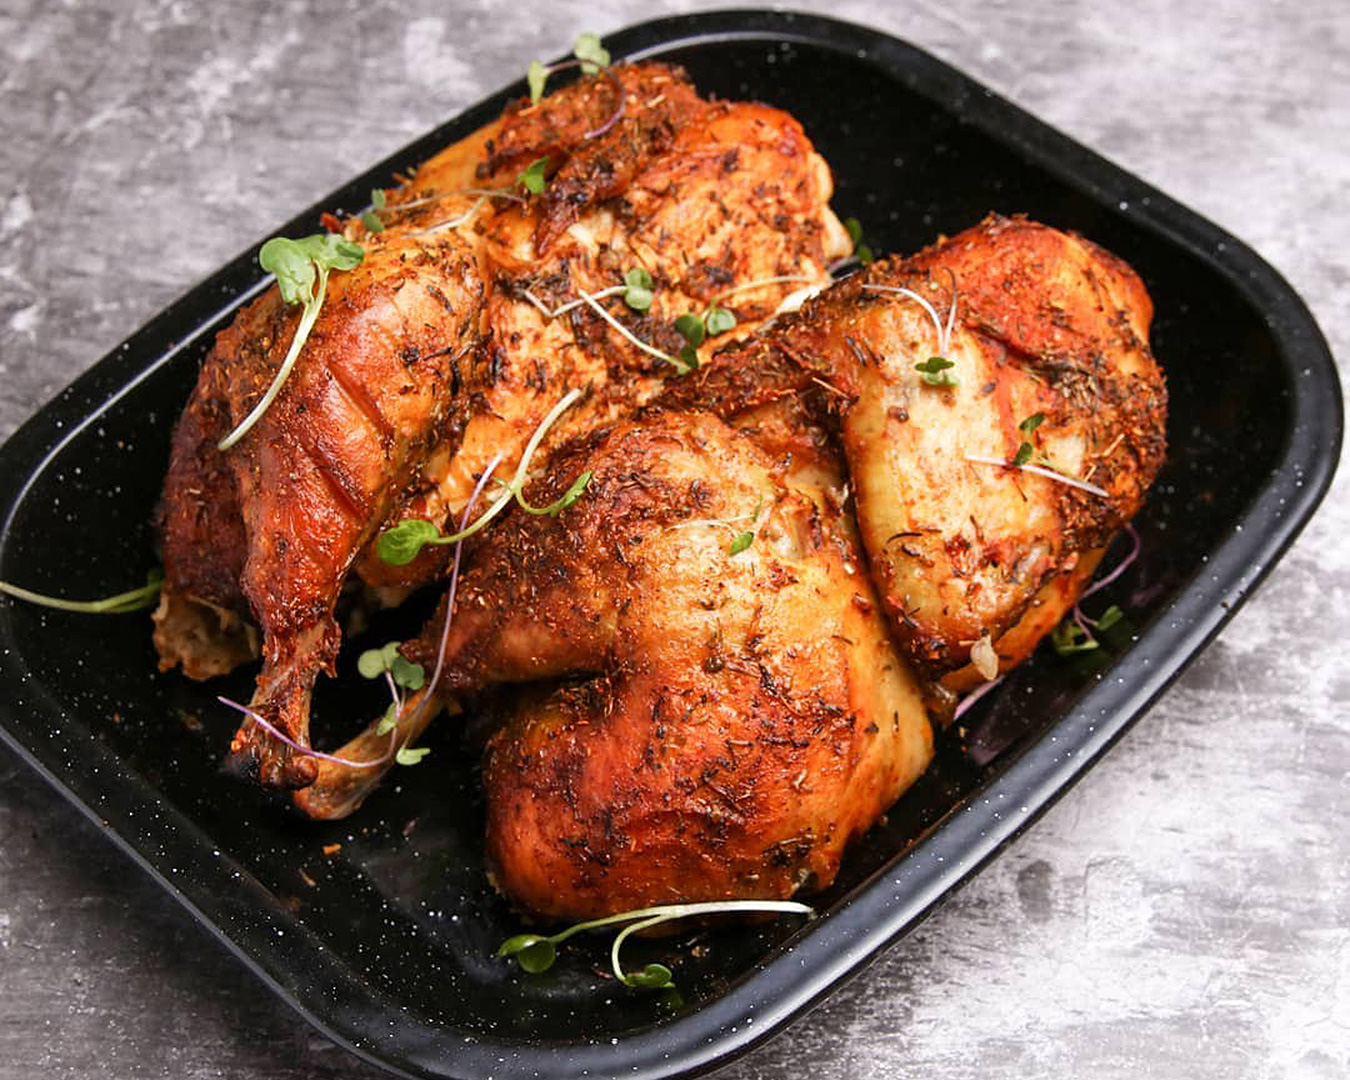 A roast chicken at Boy & Bird.